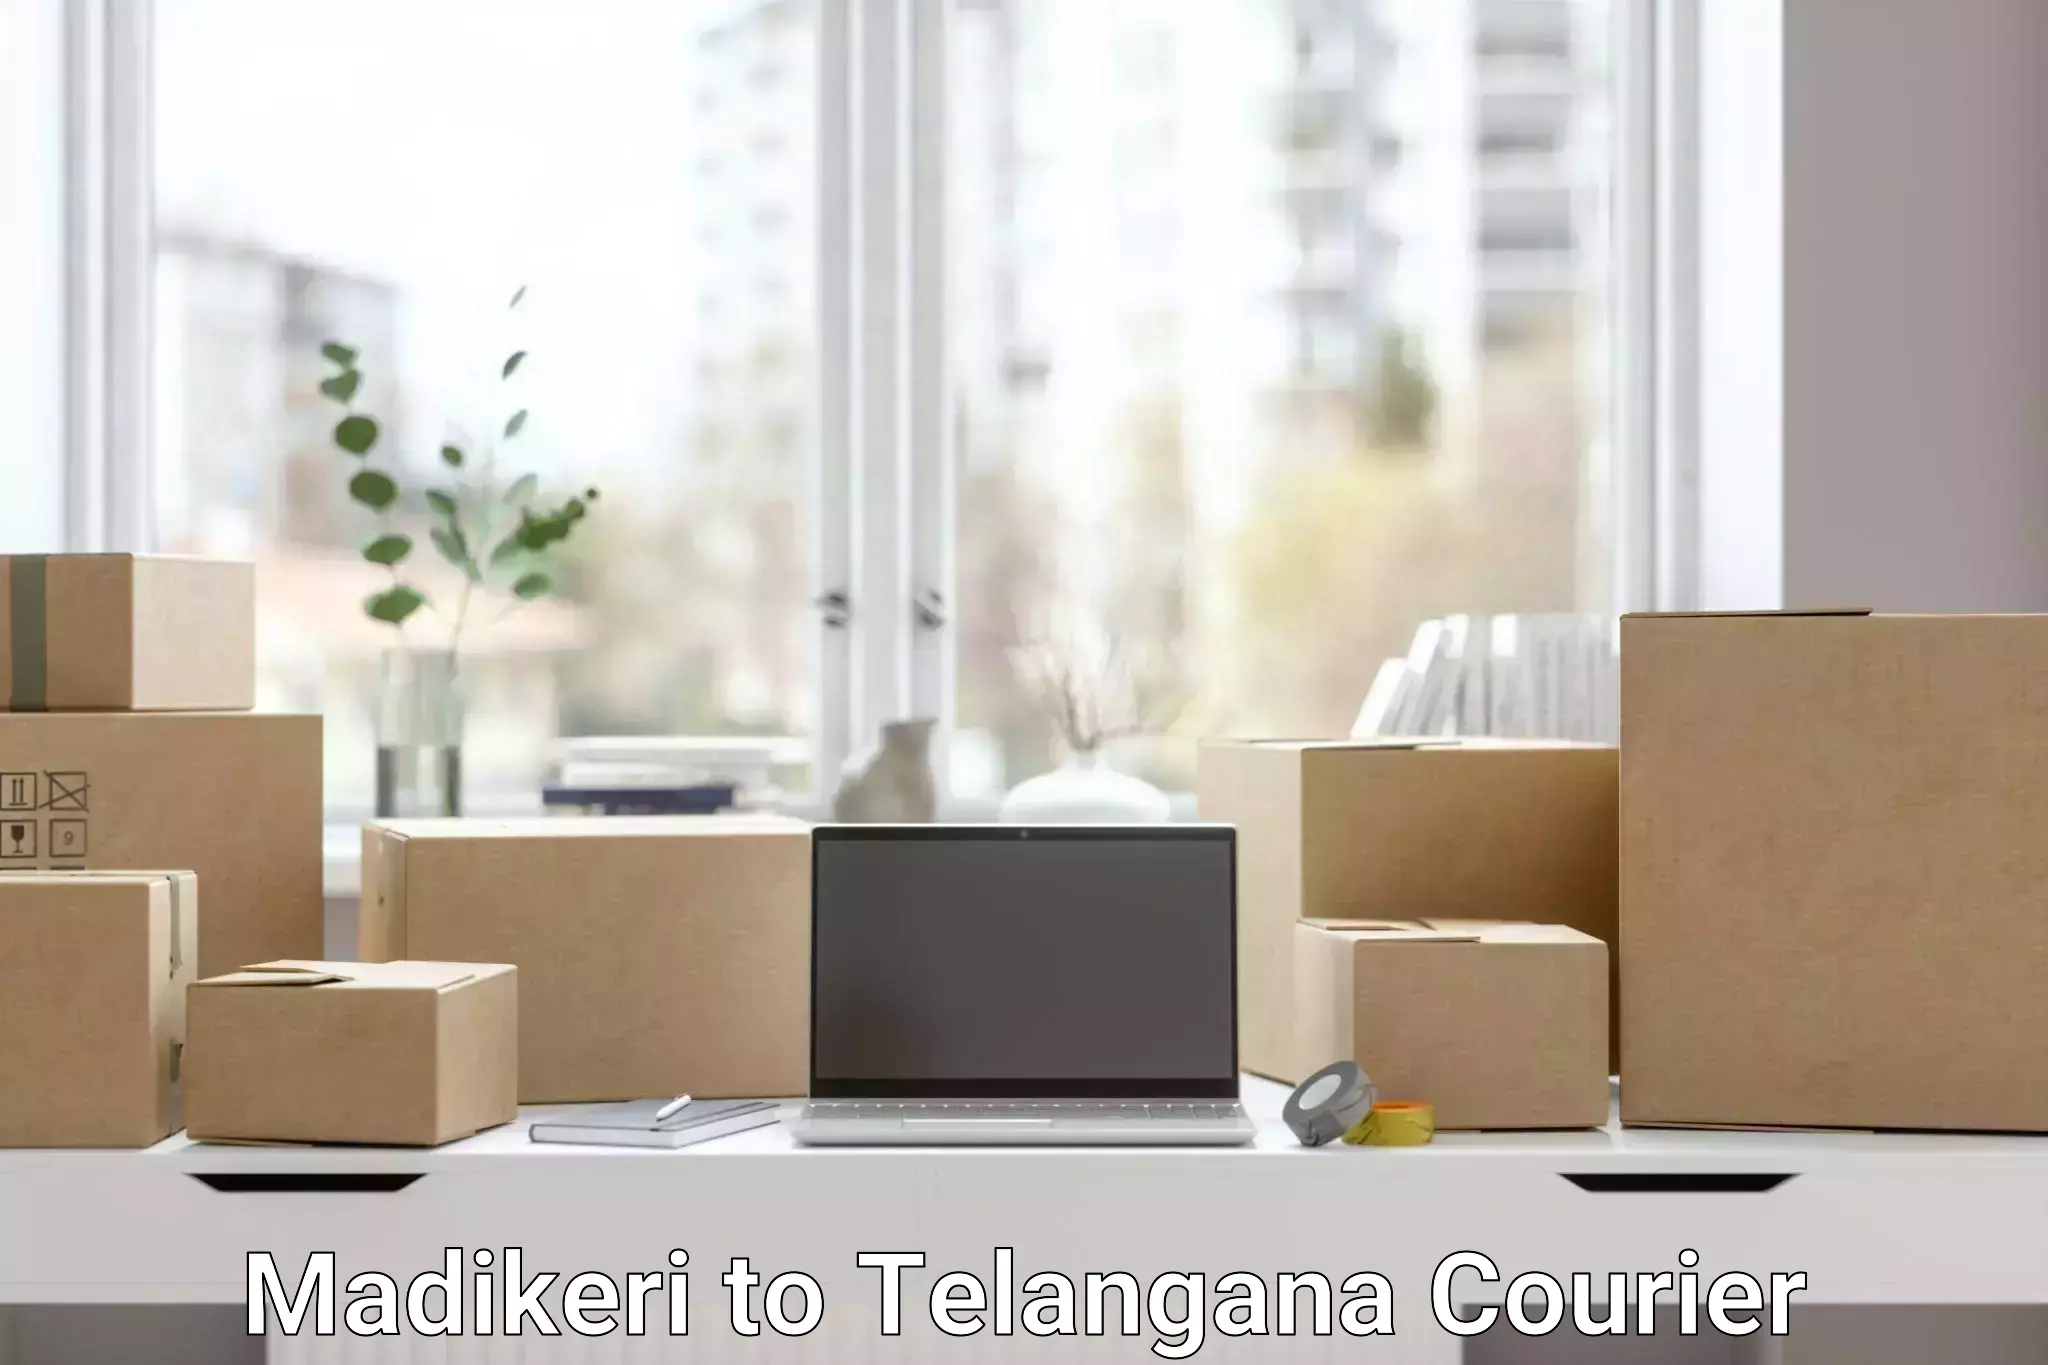 Package tracking Madikeri to Telangana